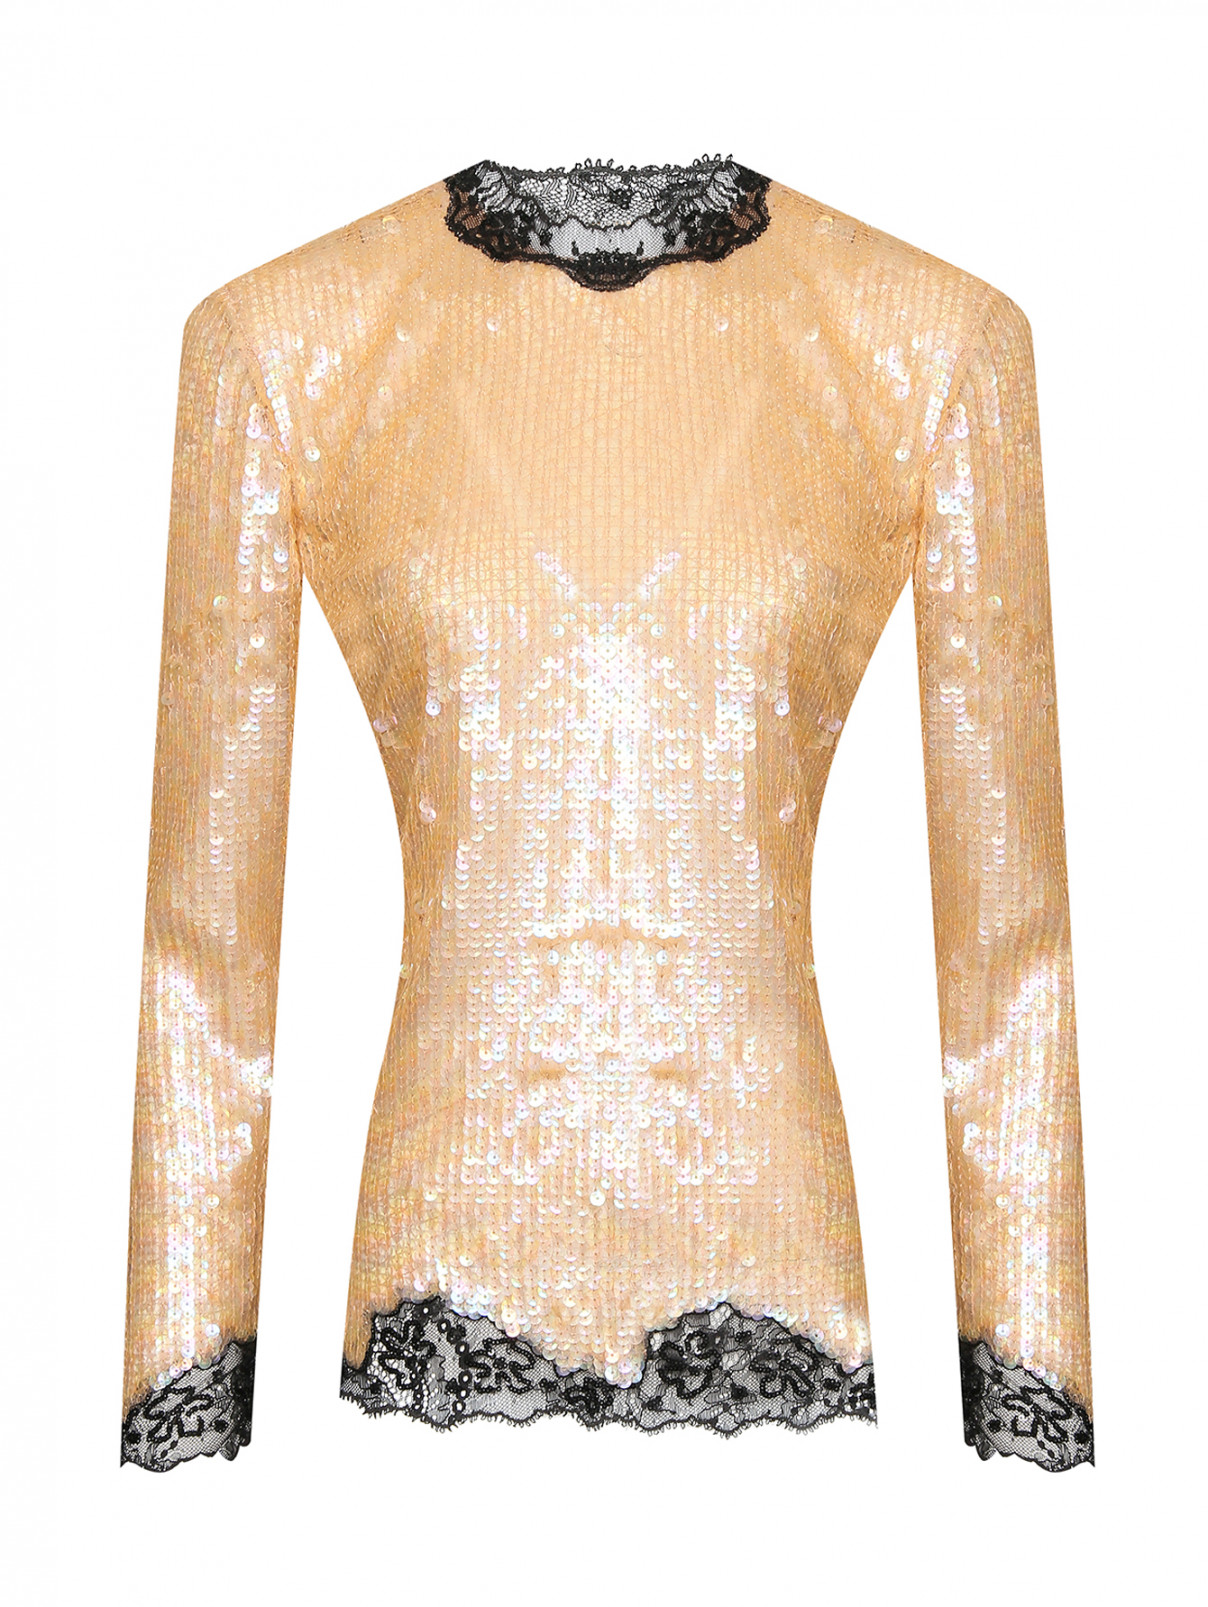 Блуза в пайетках, декорированная кружевом Ermanno Scervino  –  Общий вид  – Цвет:  Бежевый